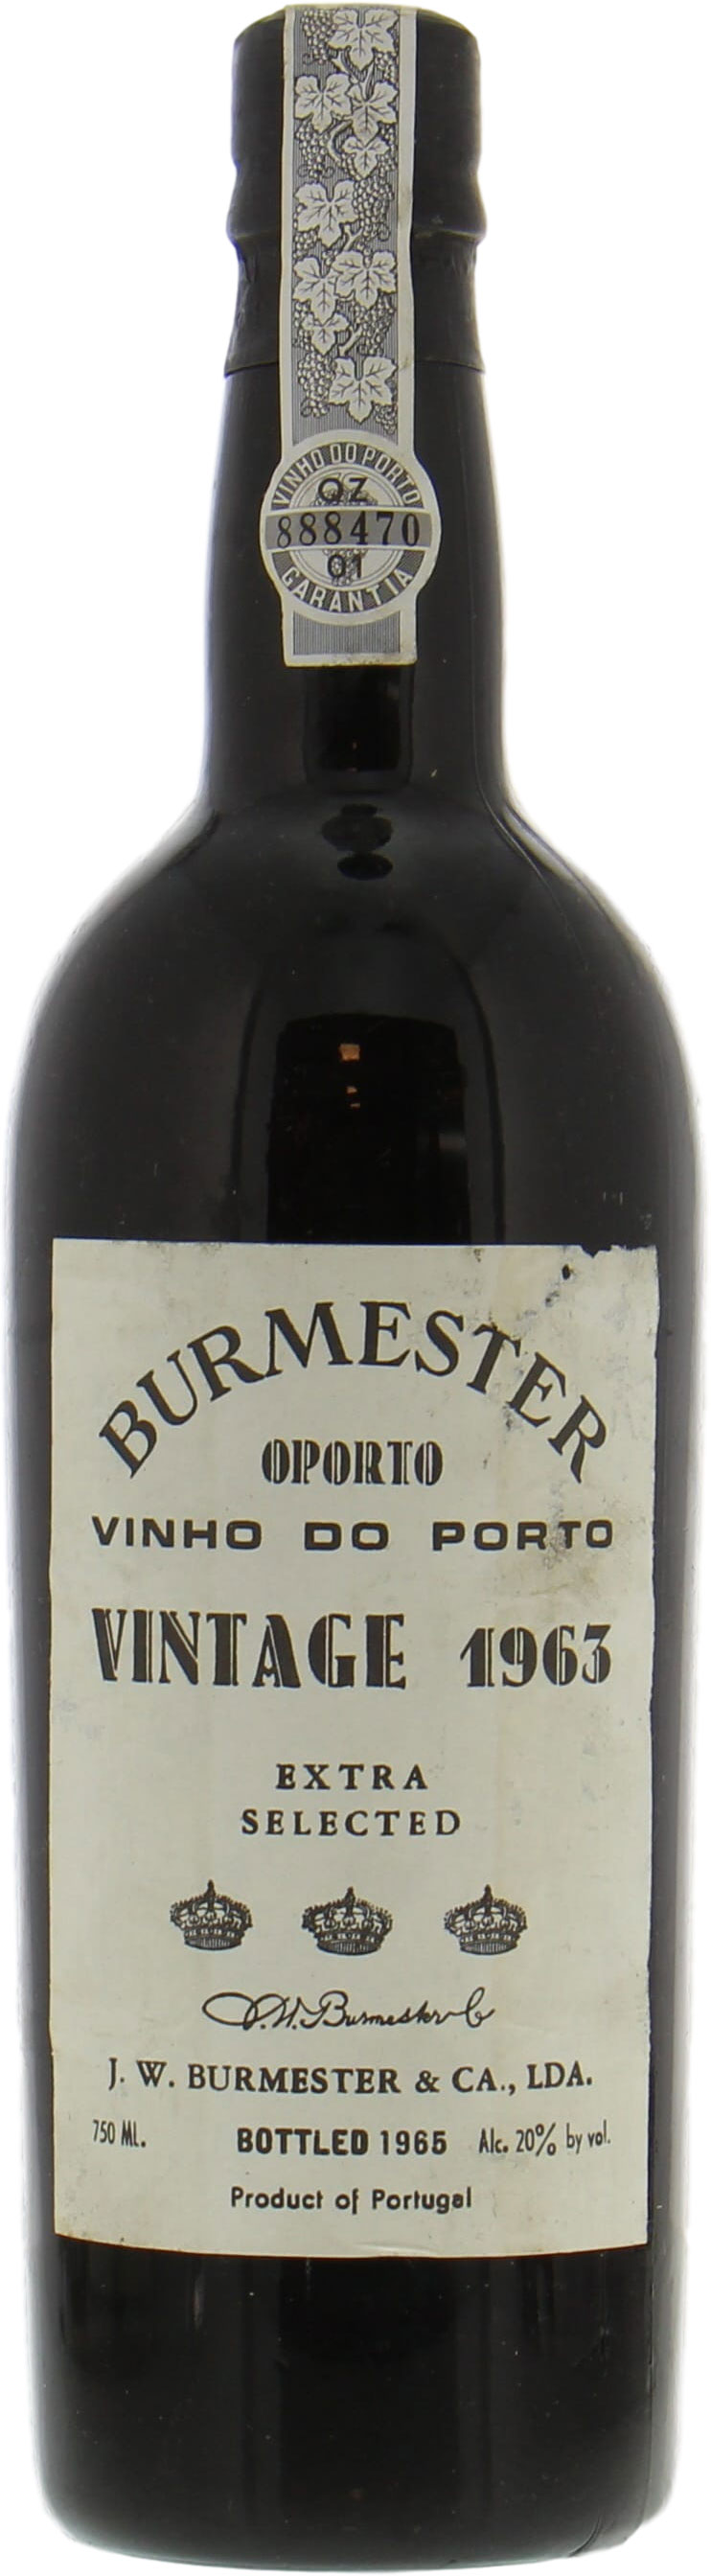 Burmester - Vintage Port extra selected 1963